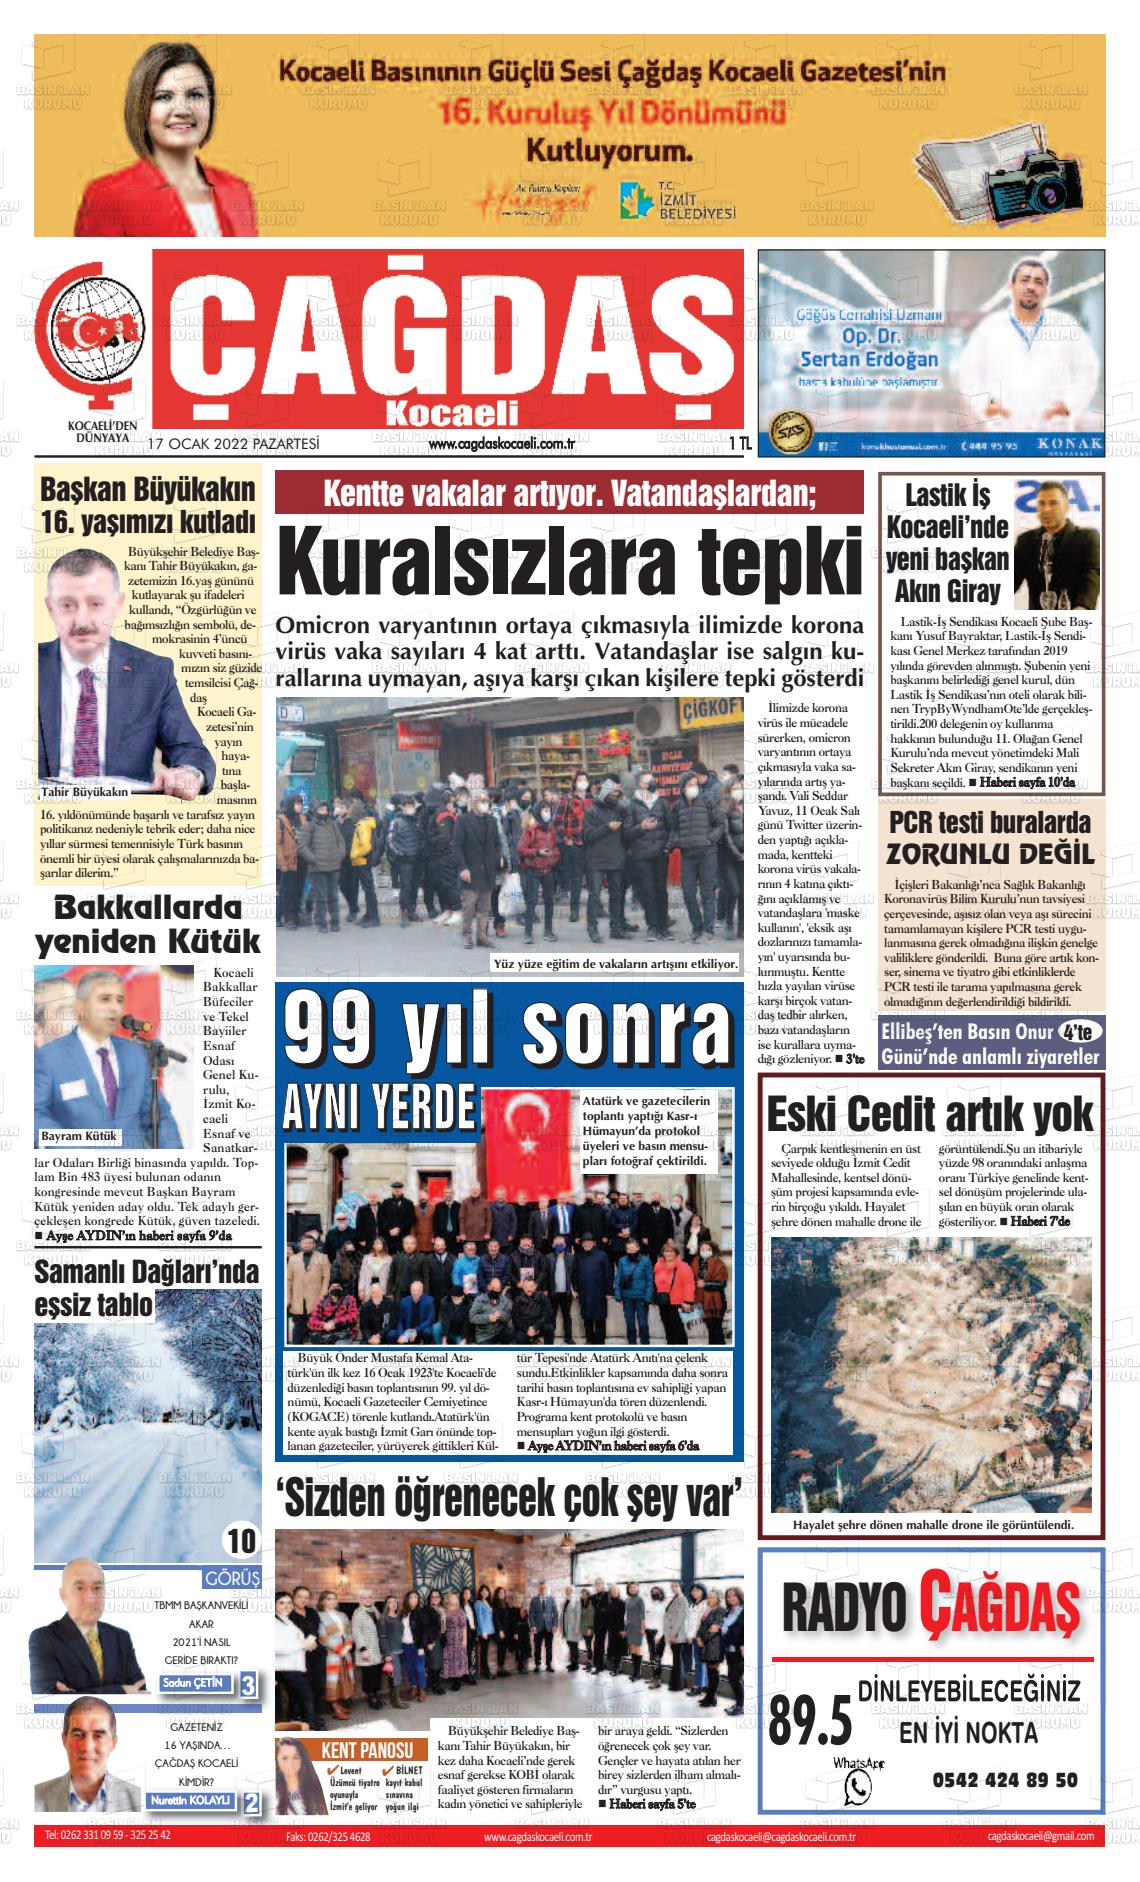 17 Ocak 2022 Çağdaş Kocaeli Gazete Manşeti